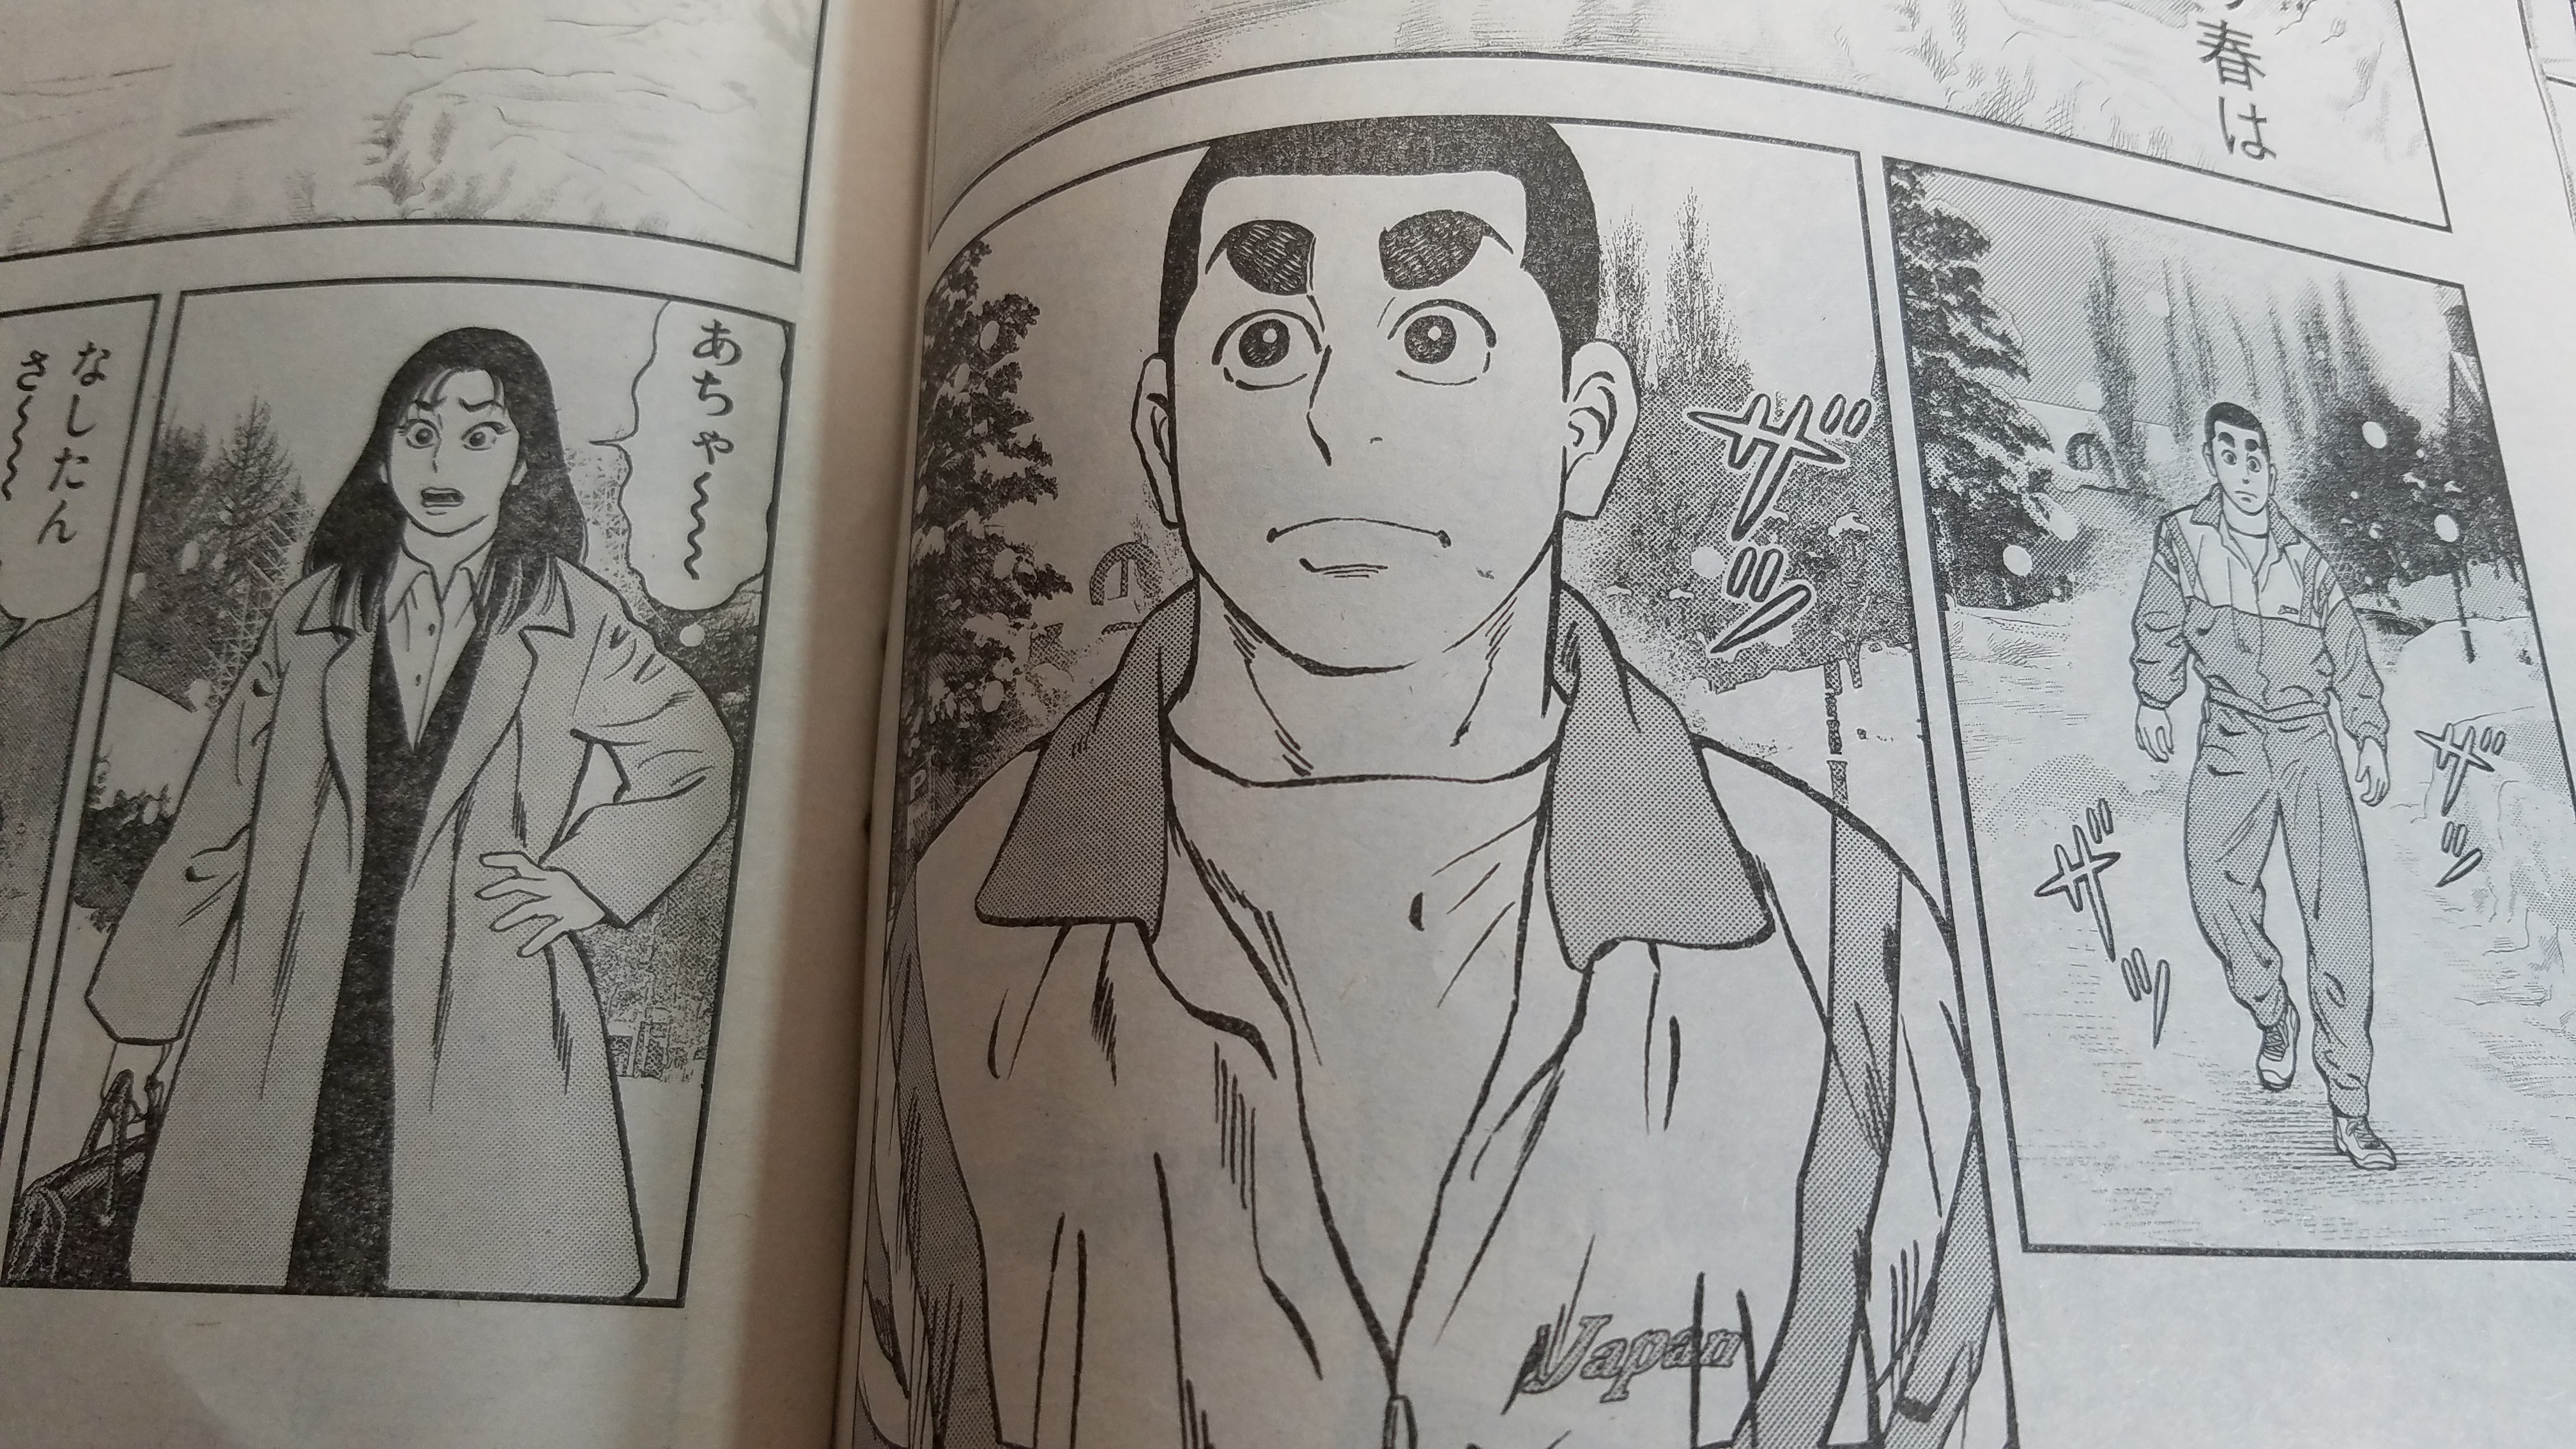 小林まことの柔道漫画の続編 女子柔道部物語 が今月から新連載 初回は三五十五も登場 明日やります